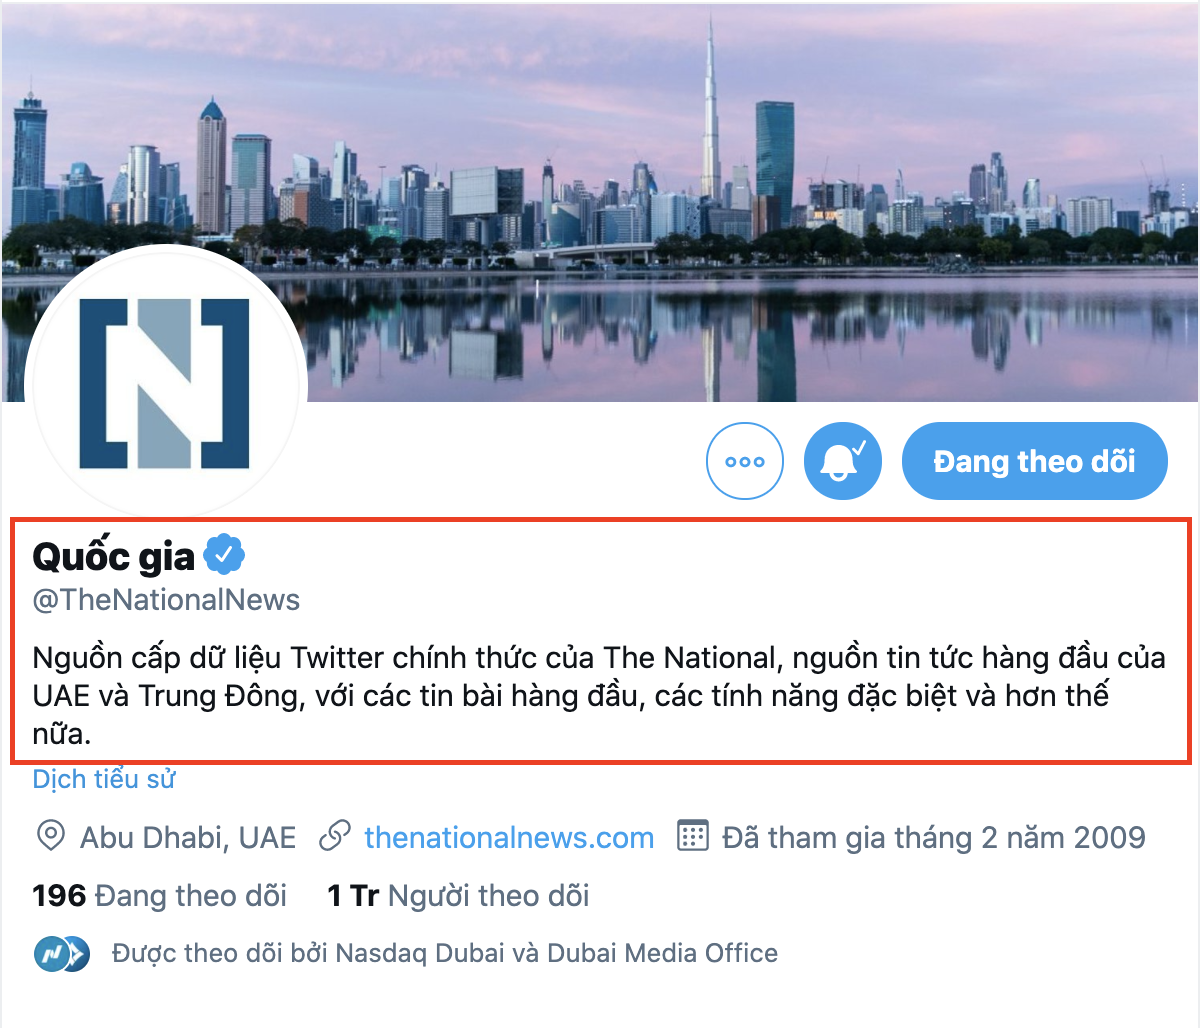 Kênh thông tin quốc gia của UAE